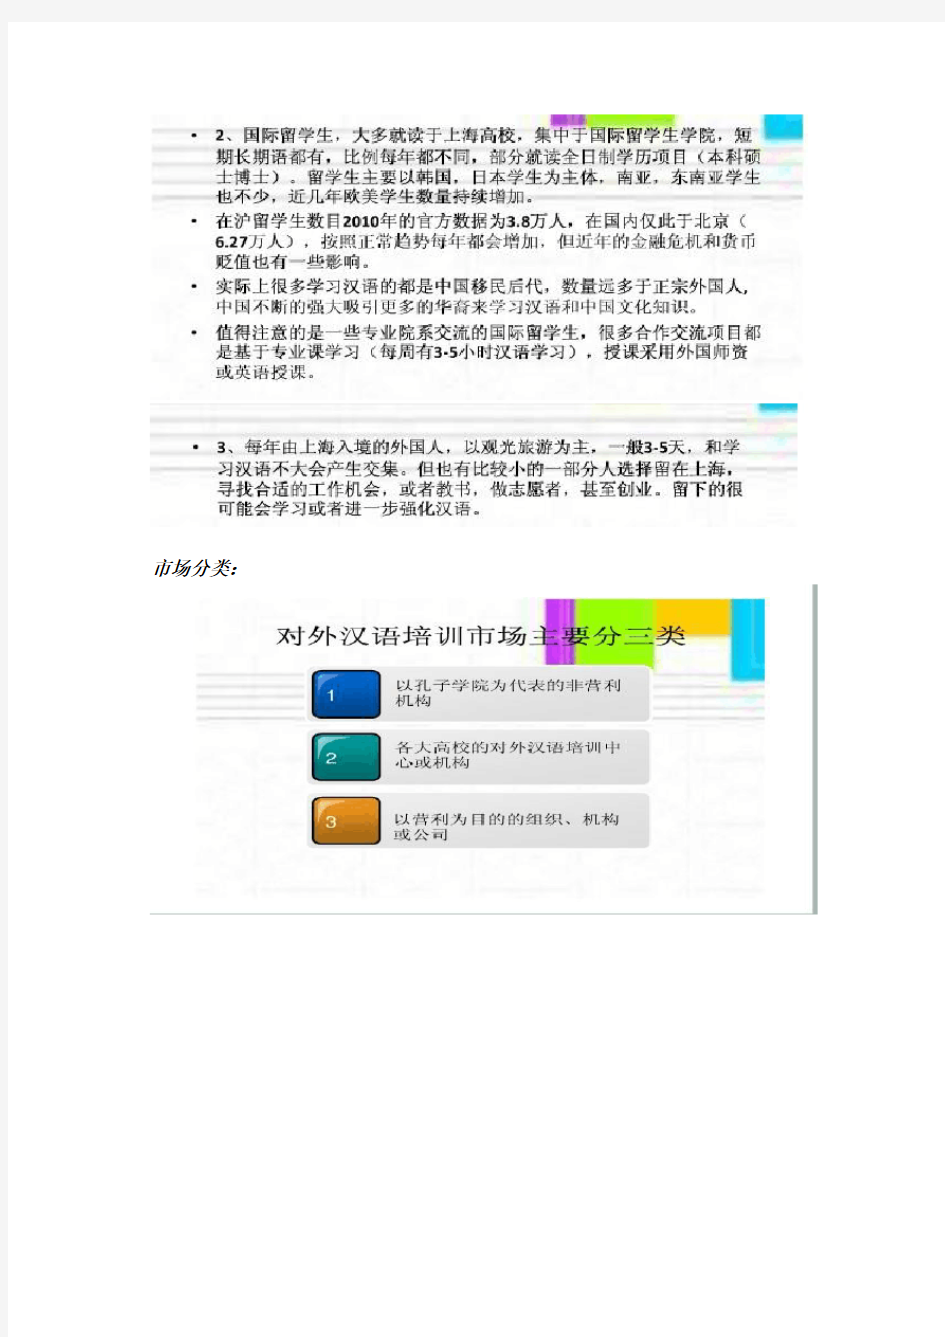 对外汉语教学市场分析报告(整合版)汇总